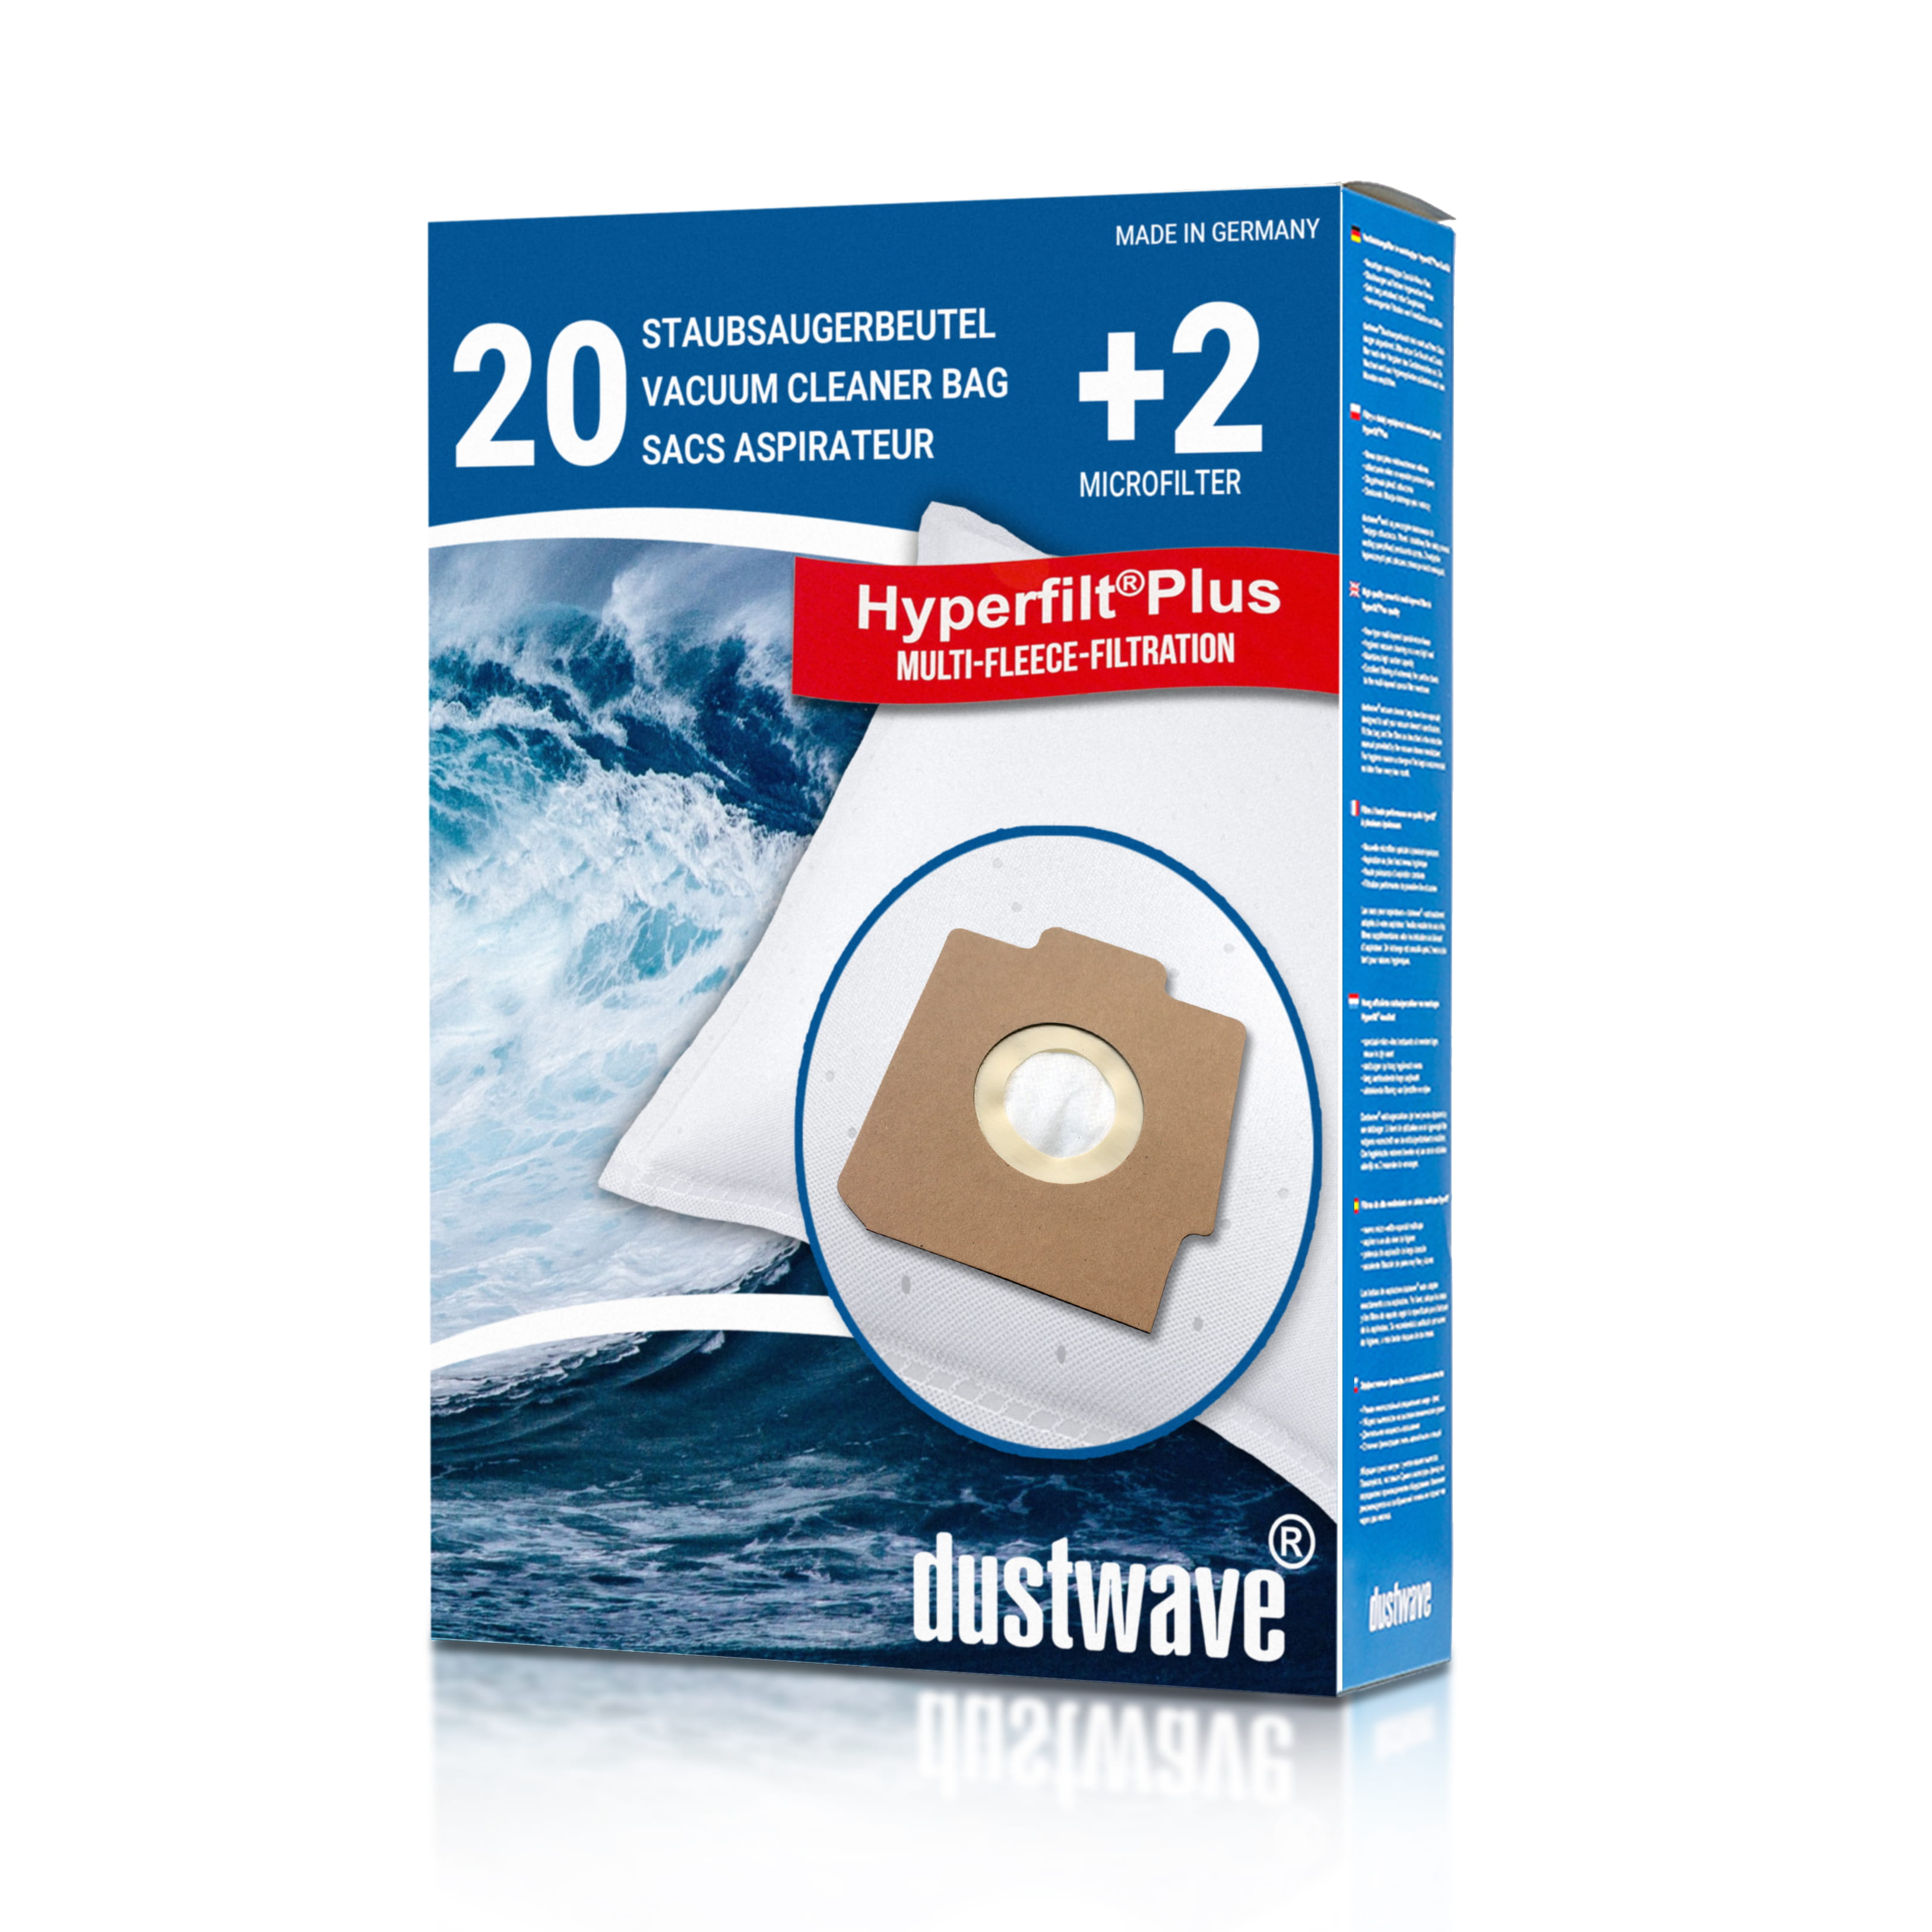 Dustwave® 20 Staubsaugerbeutel für Hoover S3936051 / TRS3936051 - hocheffizient, mehrlagiges Mikrovlies mit Hygieneverschluss - Made in Germany